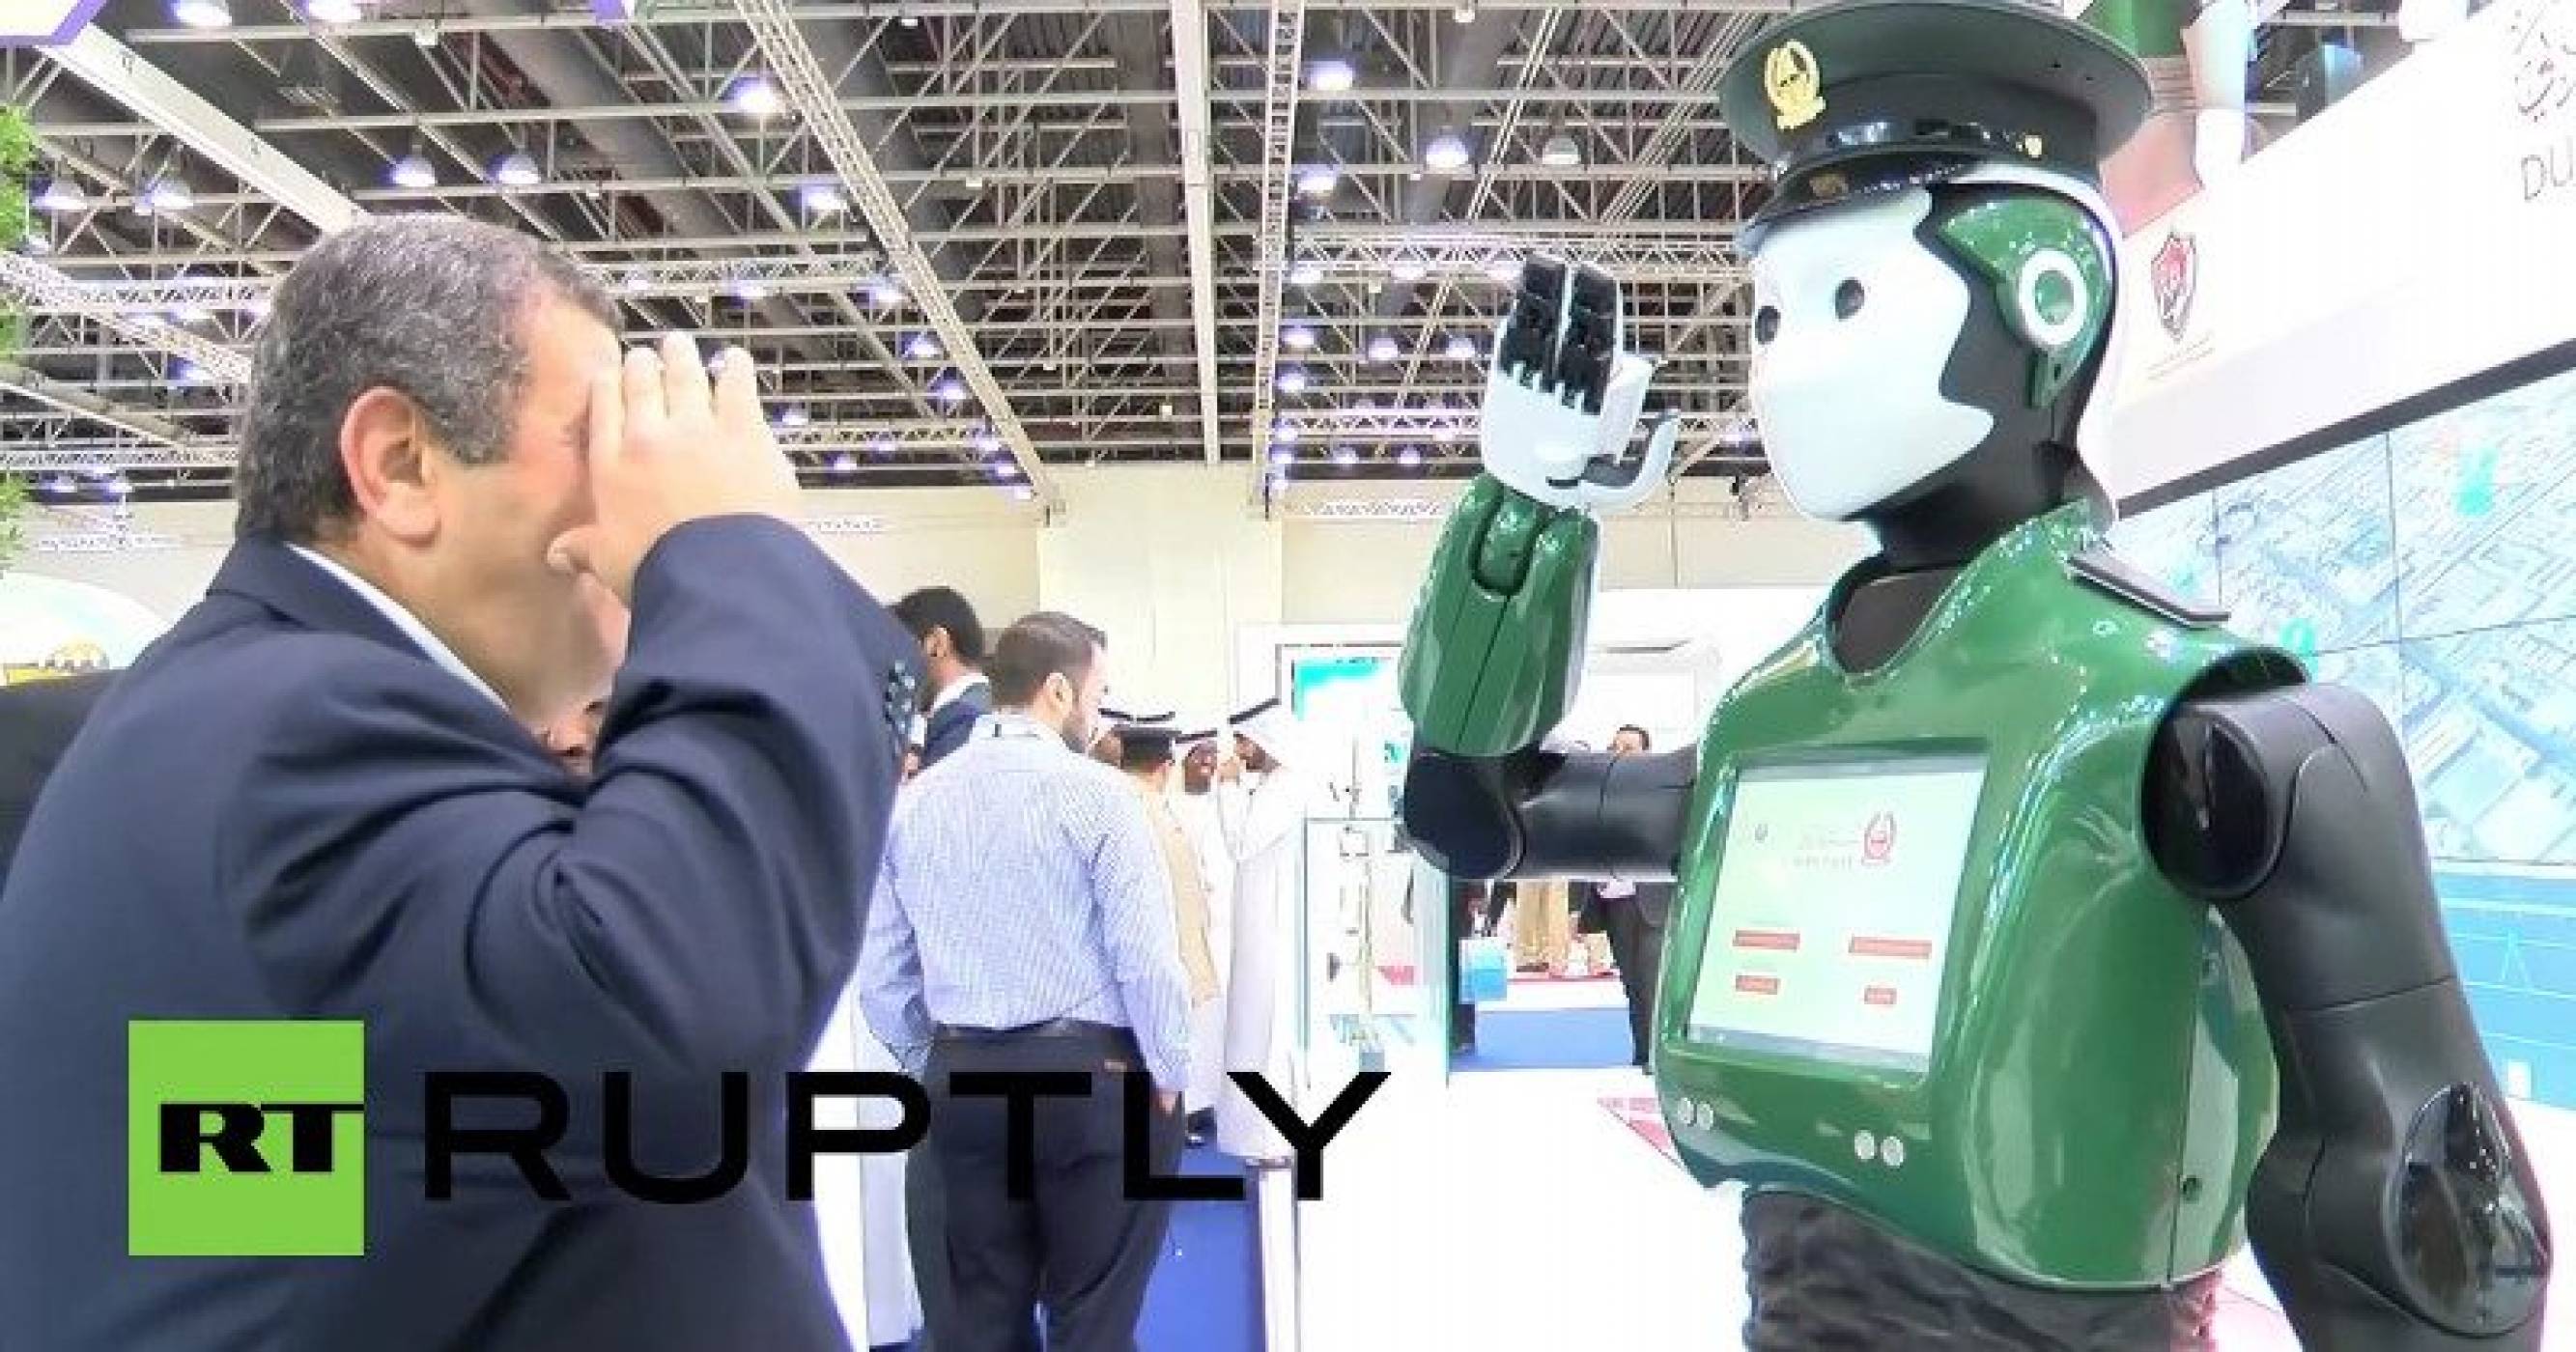 Първите роботи полицаи скоро ще патрулират по улиците на Дубай